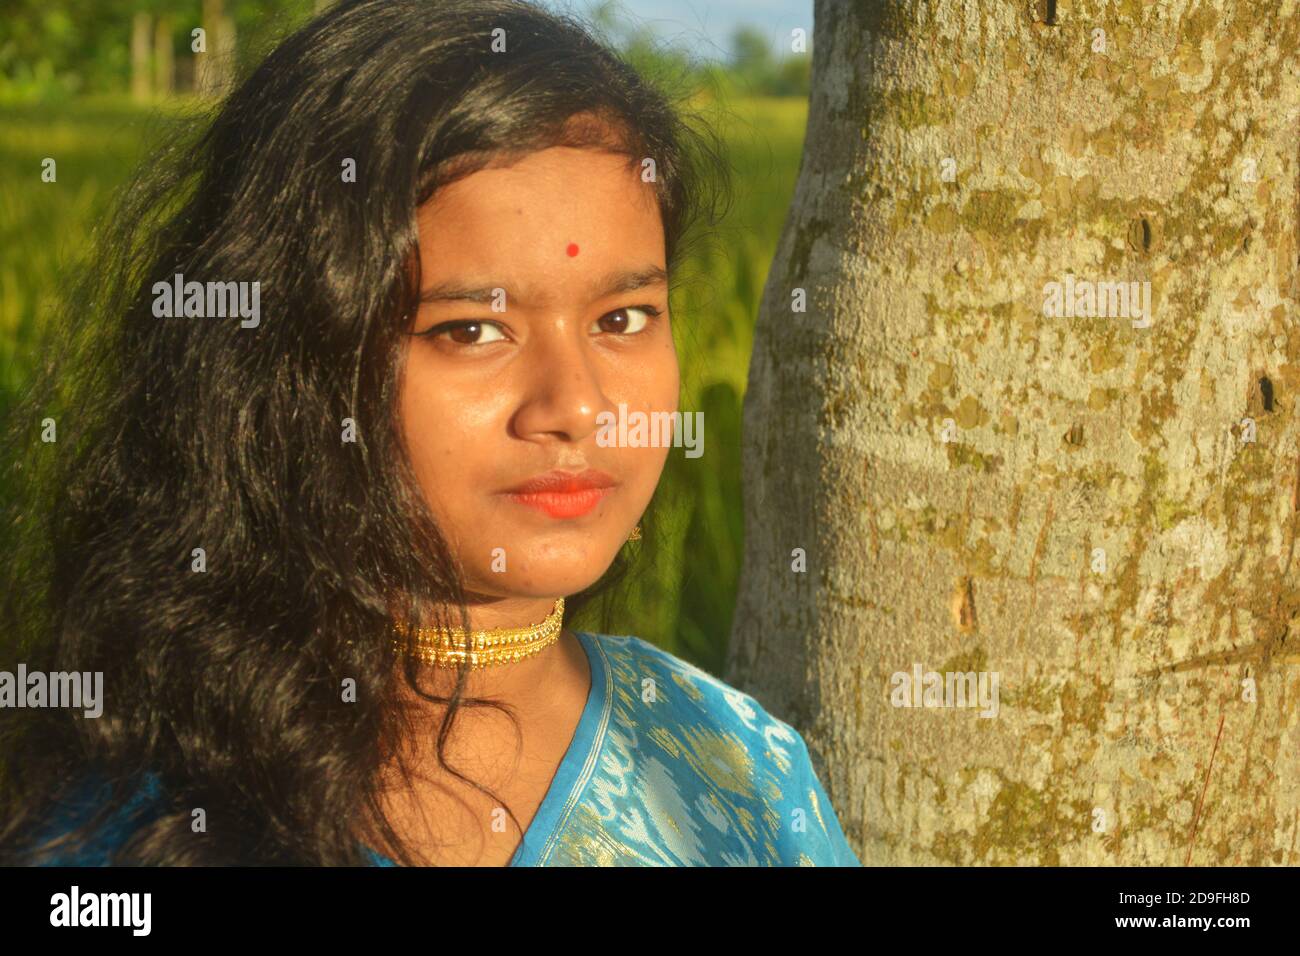 Nahaufnahme eines indischen Teenagers mit Sari, goldener Halskette und Bindi auf der Stirn mit langen dunklen Haaren, selektive Fokussierung Stockfoto